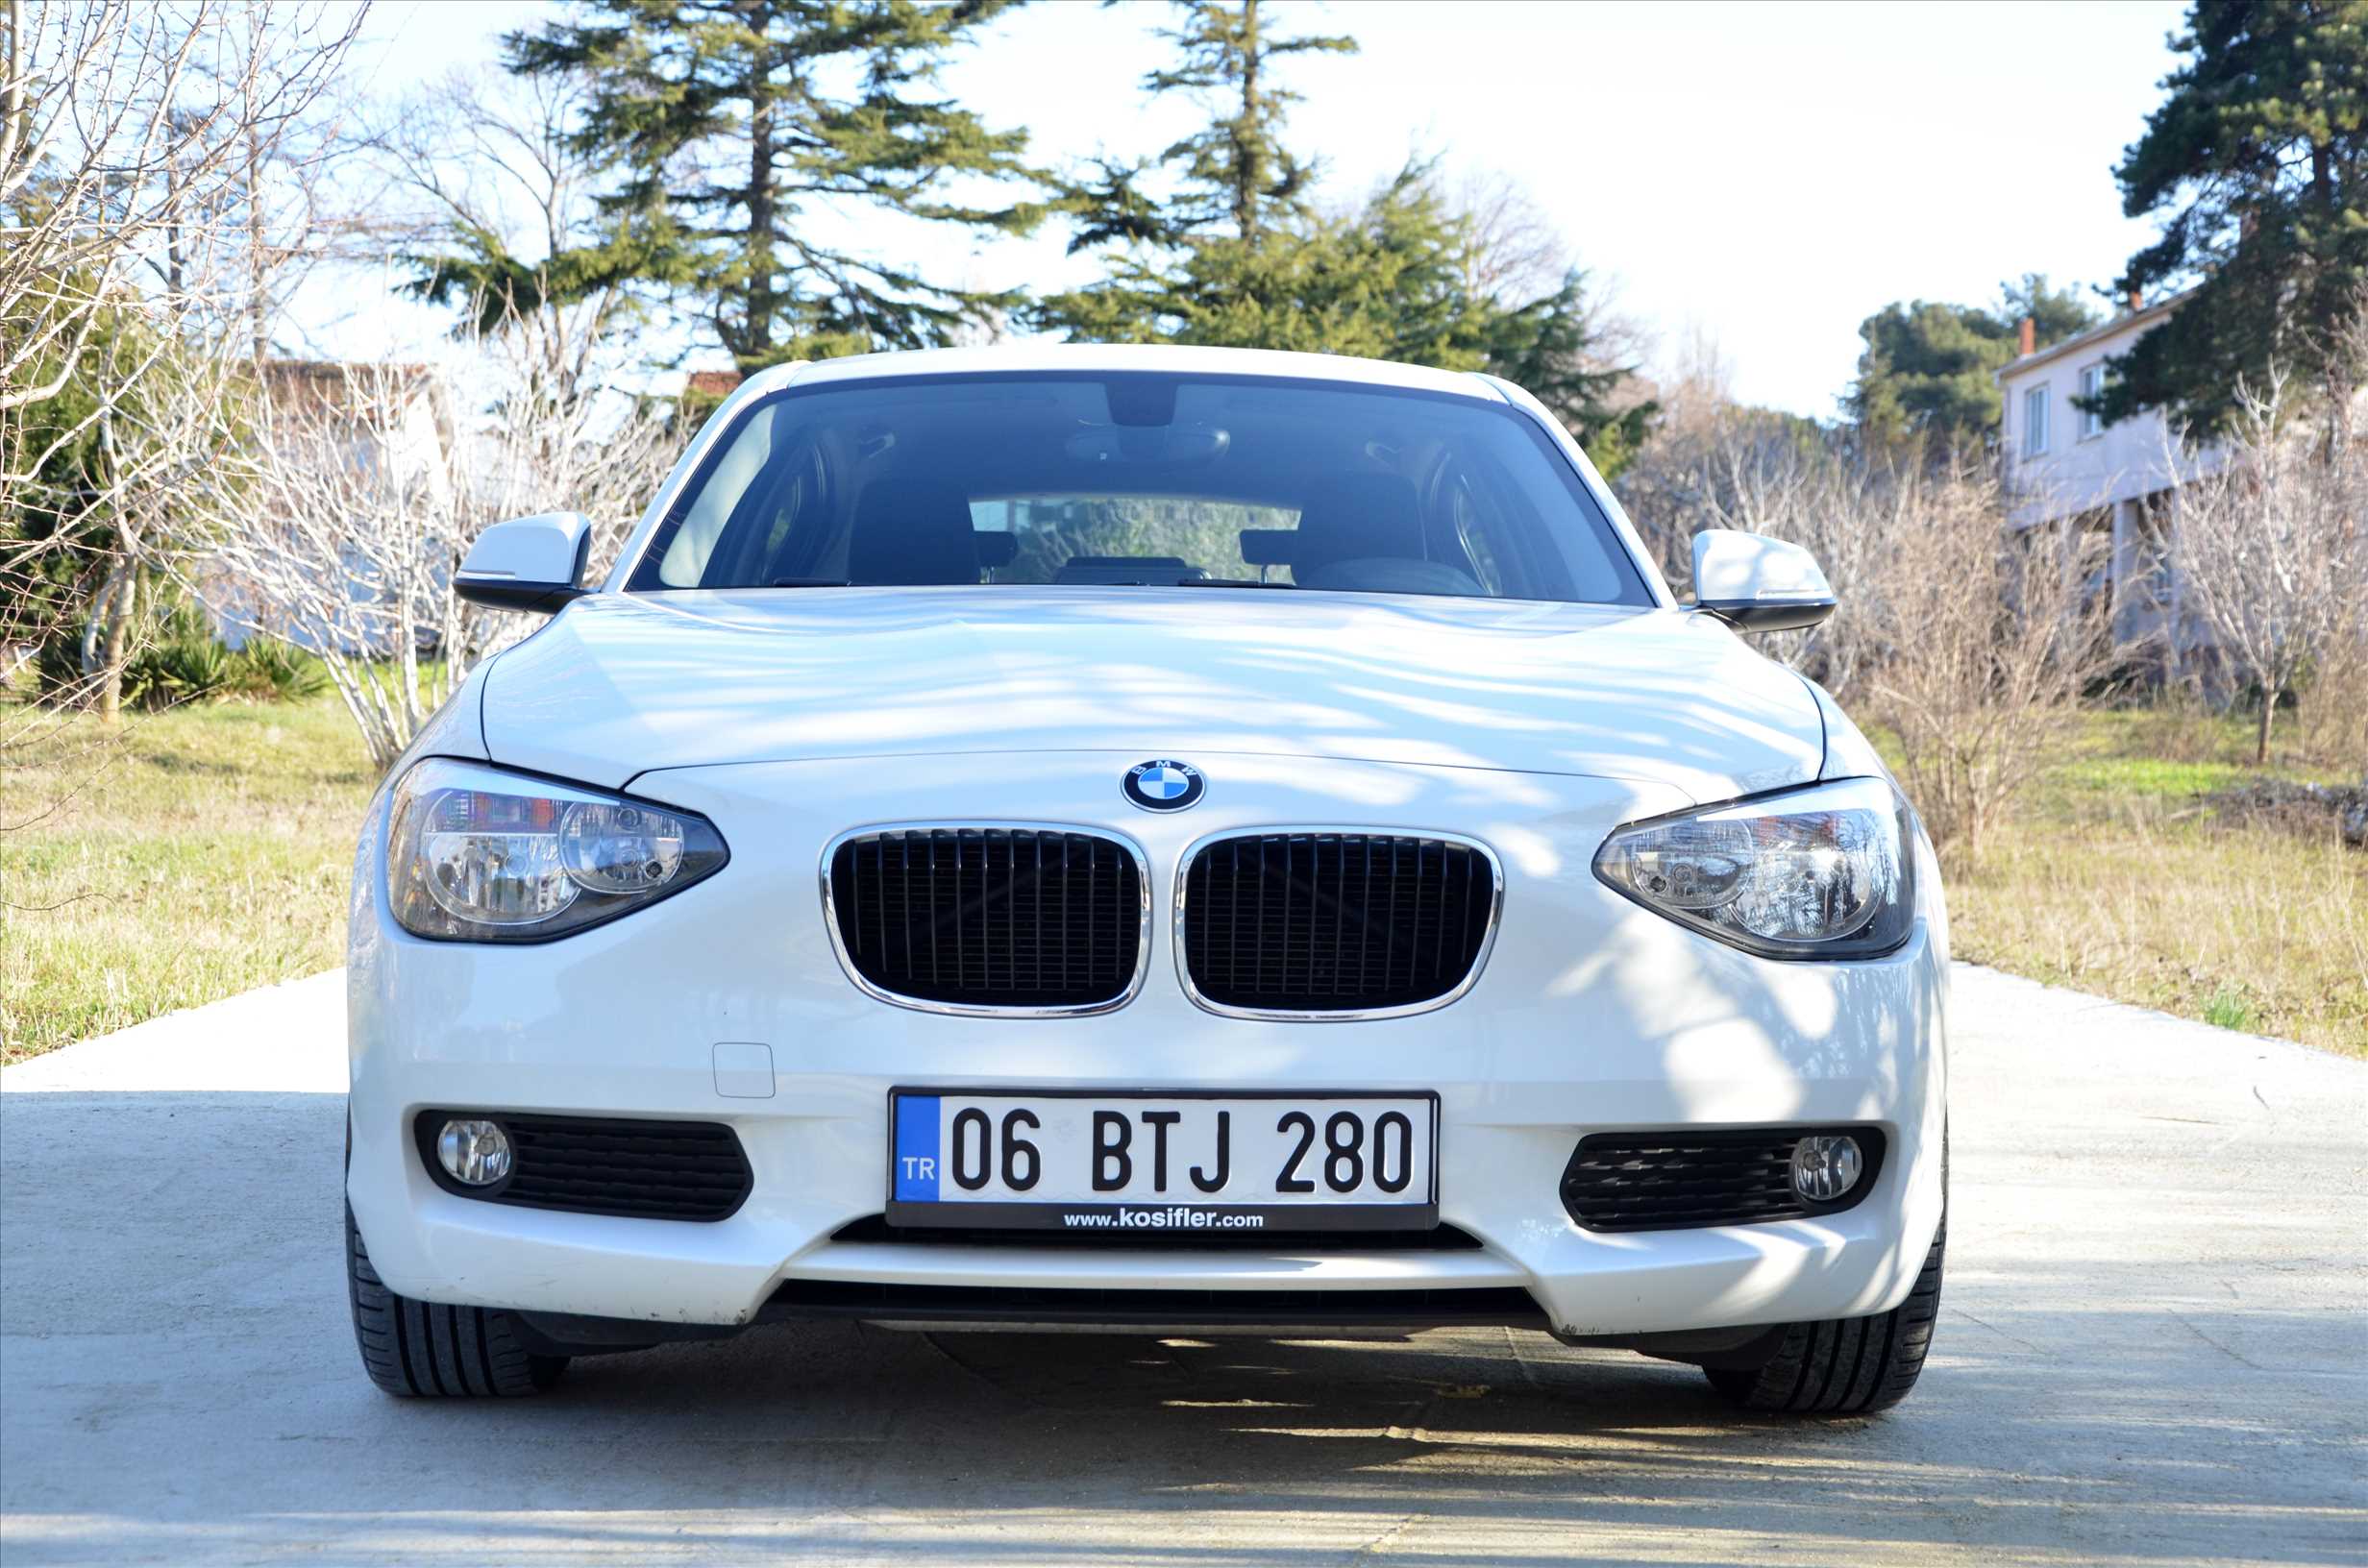   BMW 1.16i COMFORT IŞIK + ÖZEL JANT HATASIZ FULL SERVİS BAKIMLI